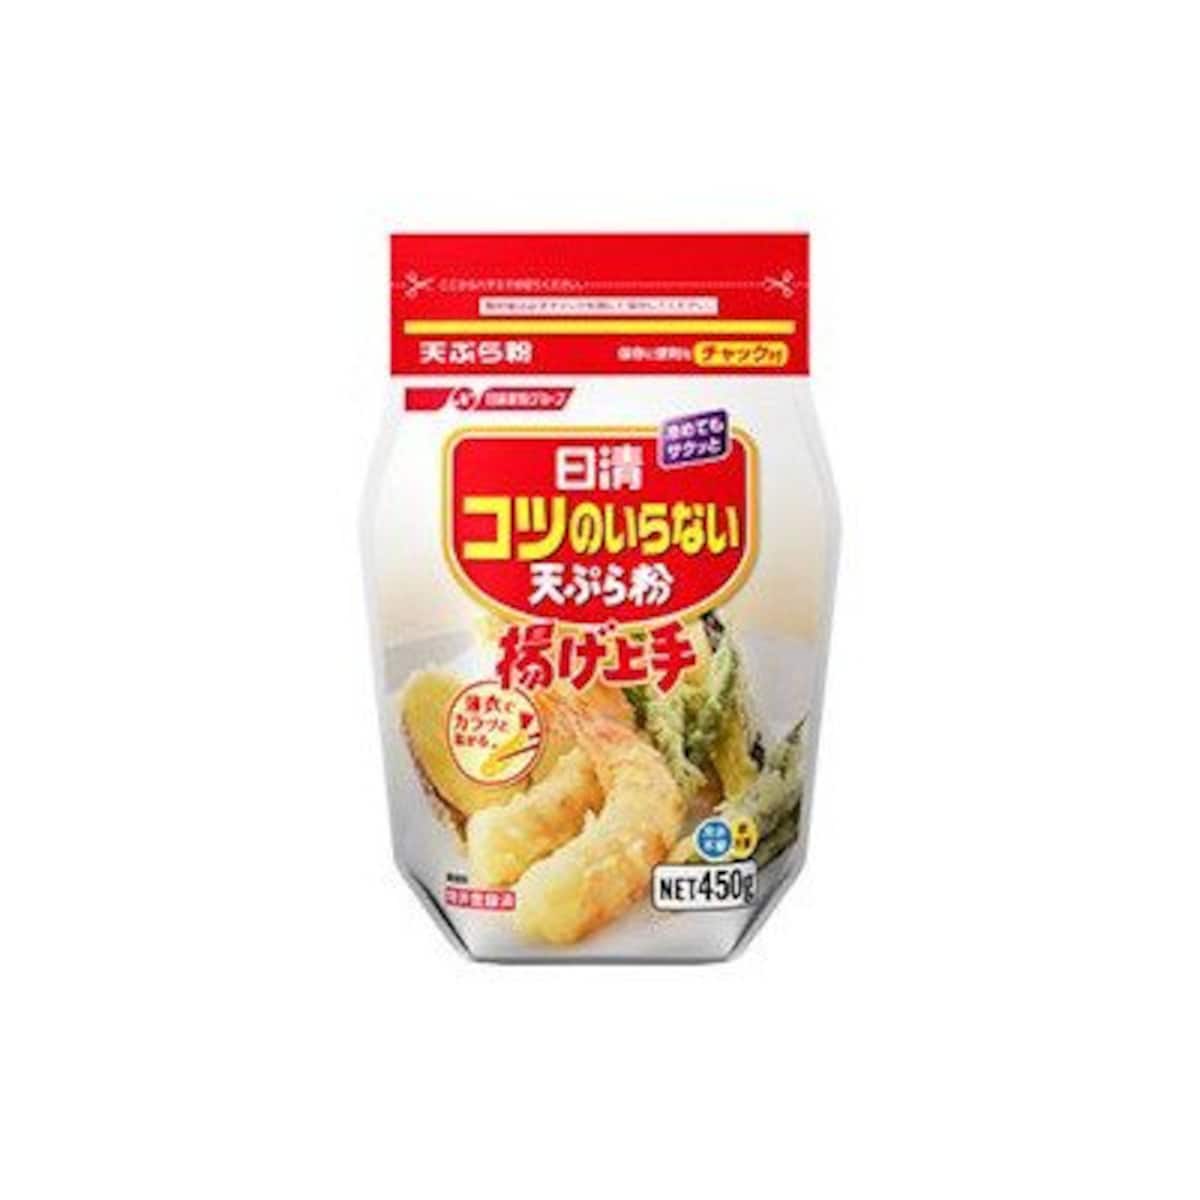 日清フーズ コツのいらない天ぷら粉 チャック付 450g